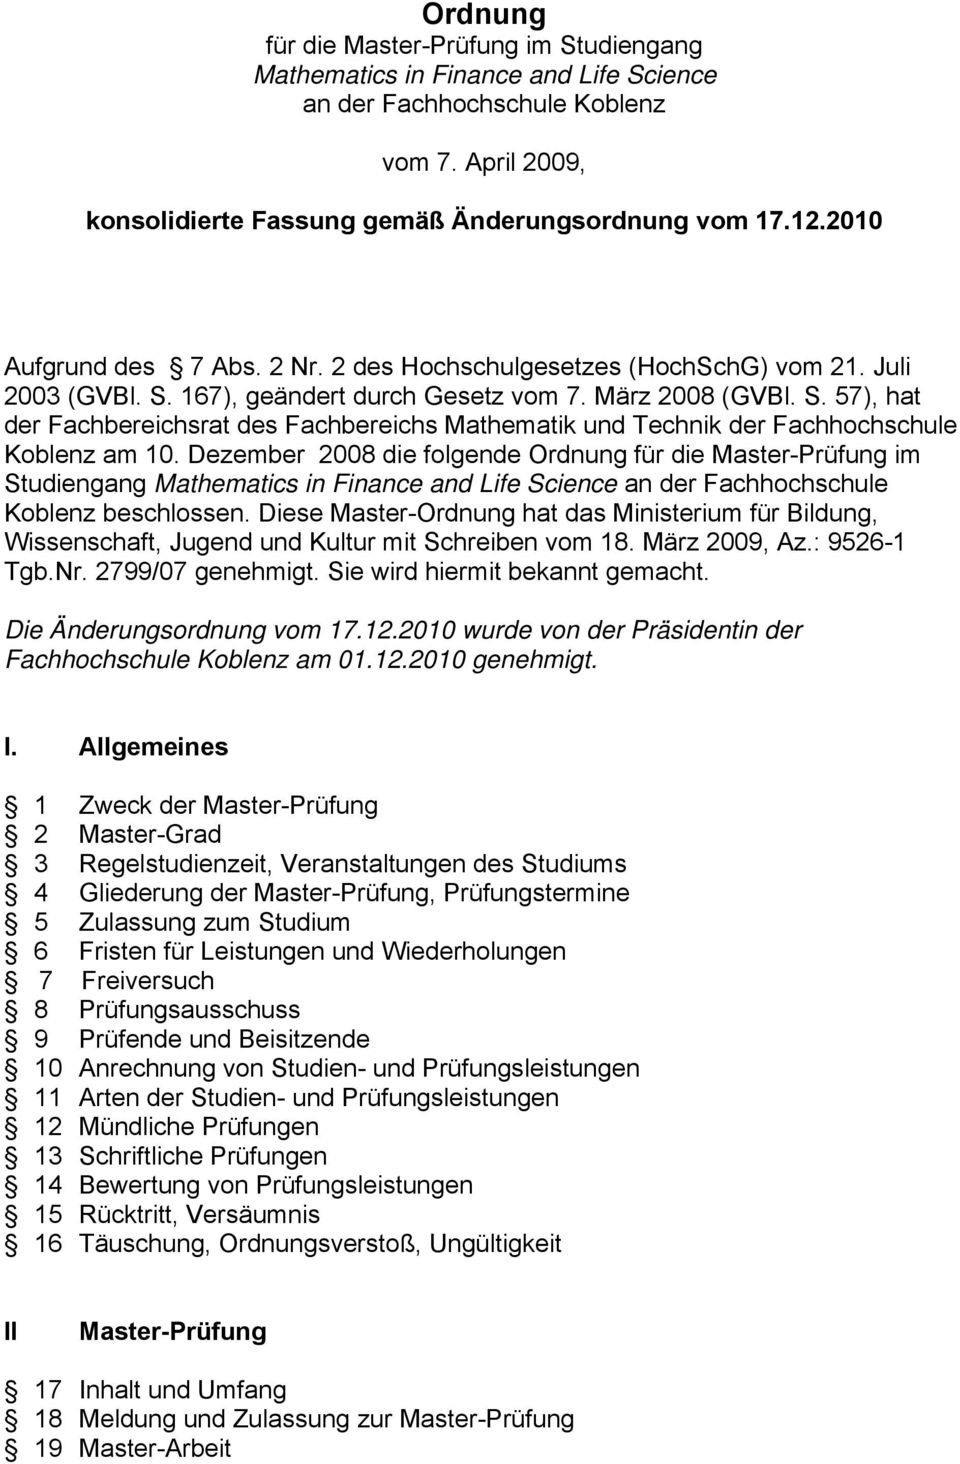 Dezember 2008 die folgende Ordnung für die Master-Prüfung im Studiengang Mathematics in Finance and Life Science an der Fachhochschule Koblenz beschlossen.